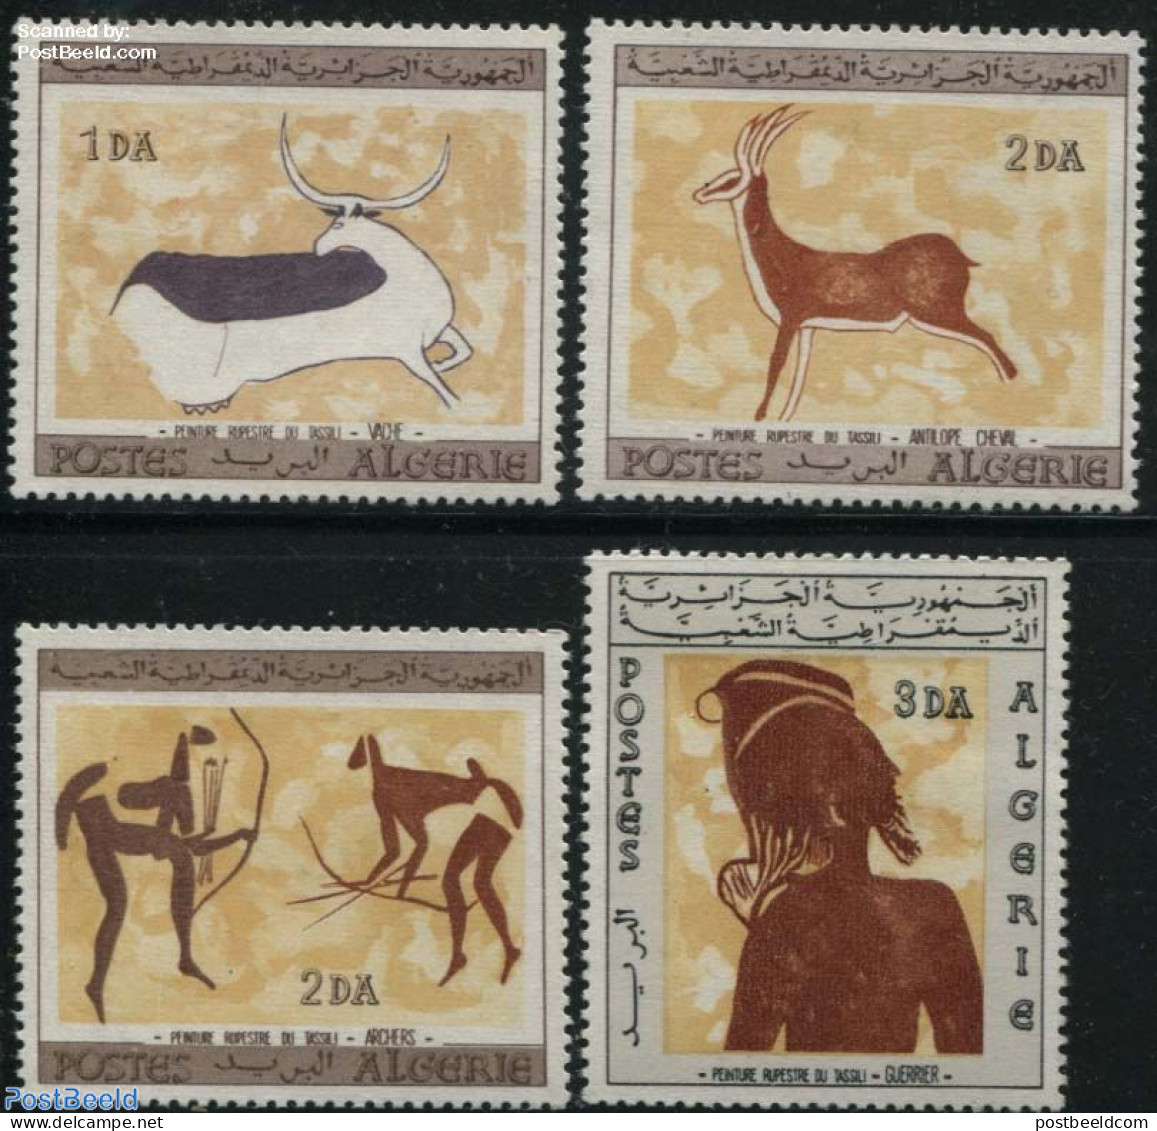 Algeria 1967 Tassili Rock Paintings 4v, Mint NH, Art - Cave Paintings - Nuevos